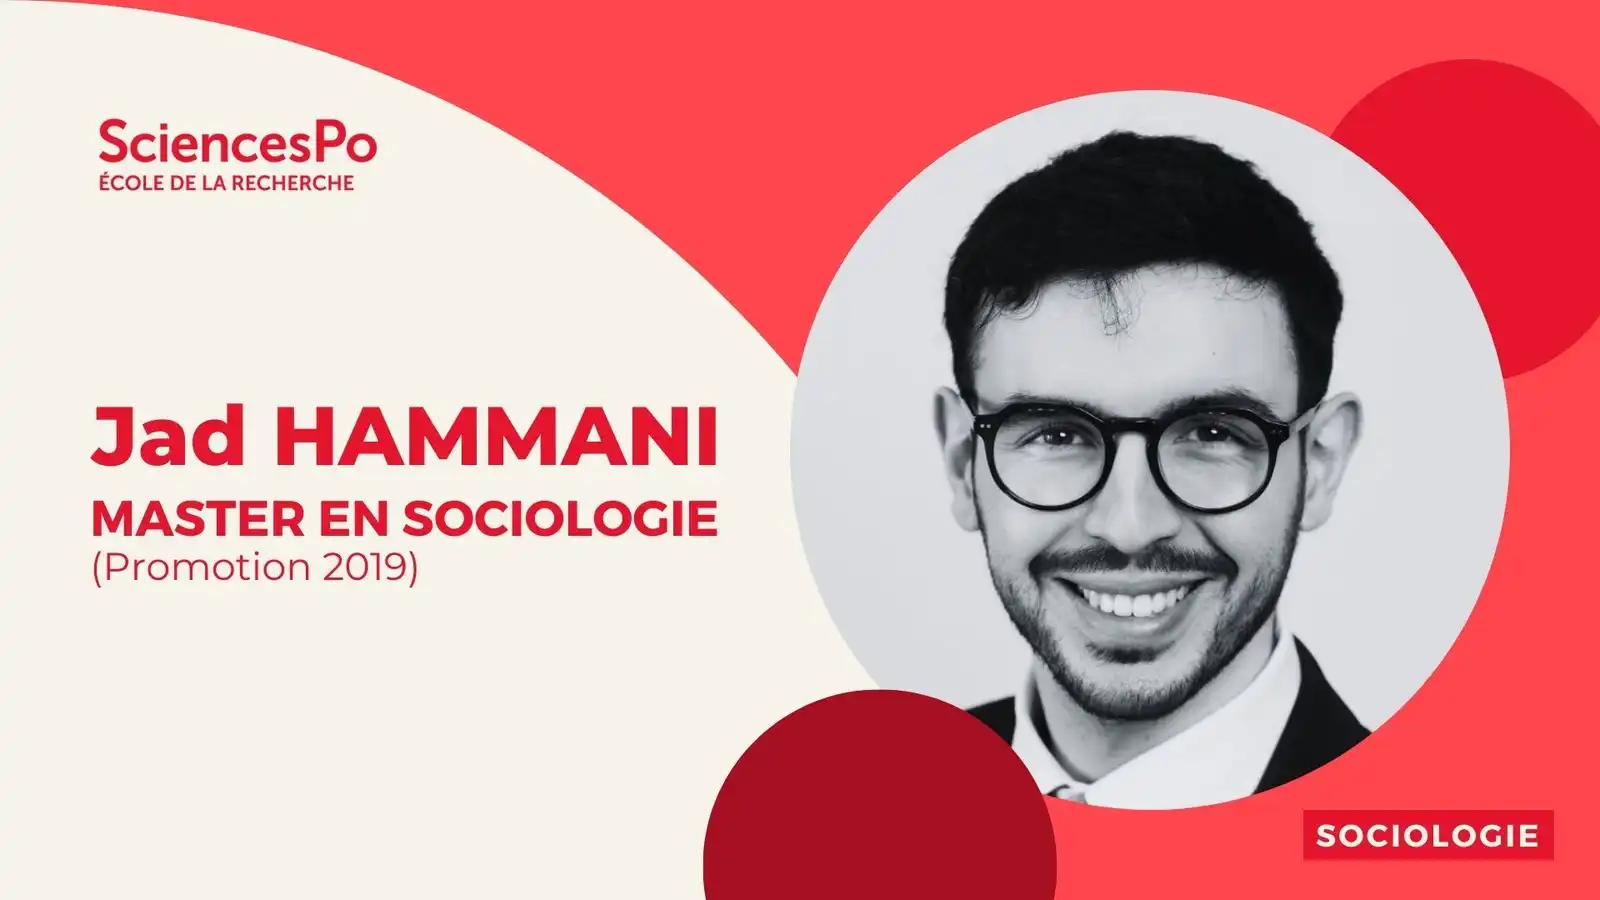 Jad Hammani, master en sociologie (promotion 2019)